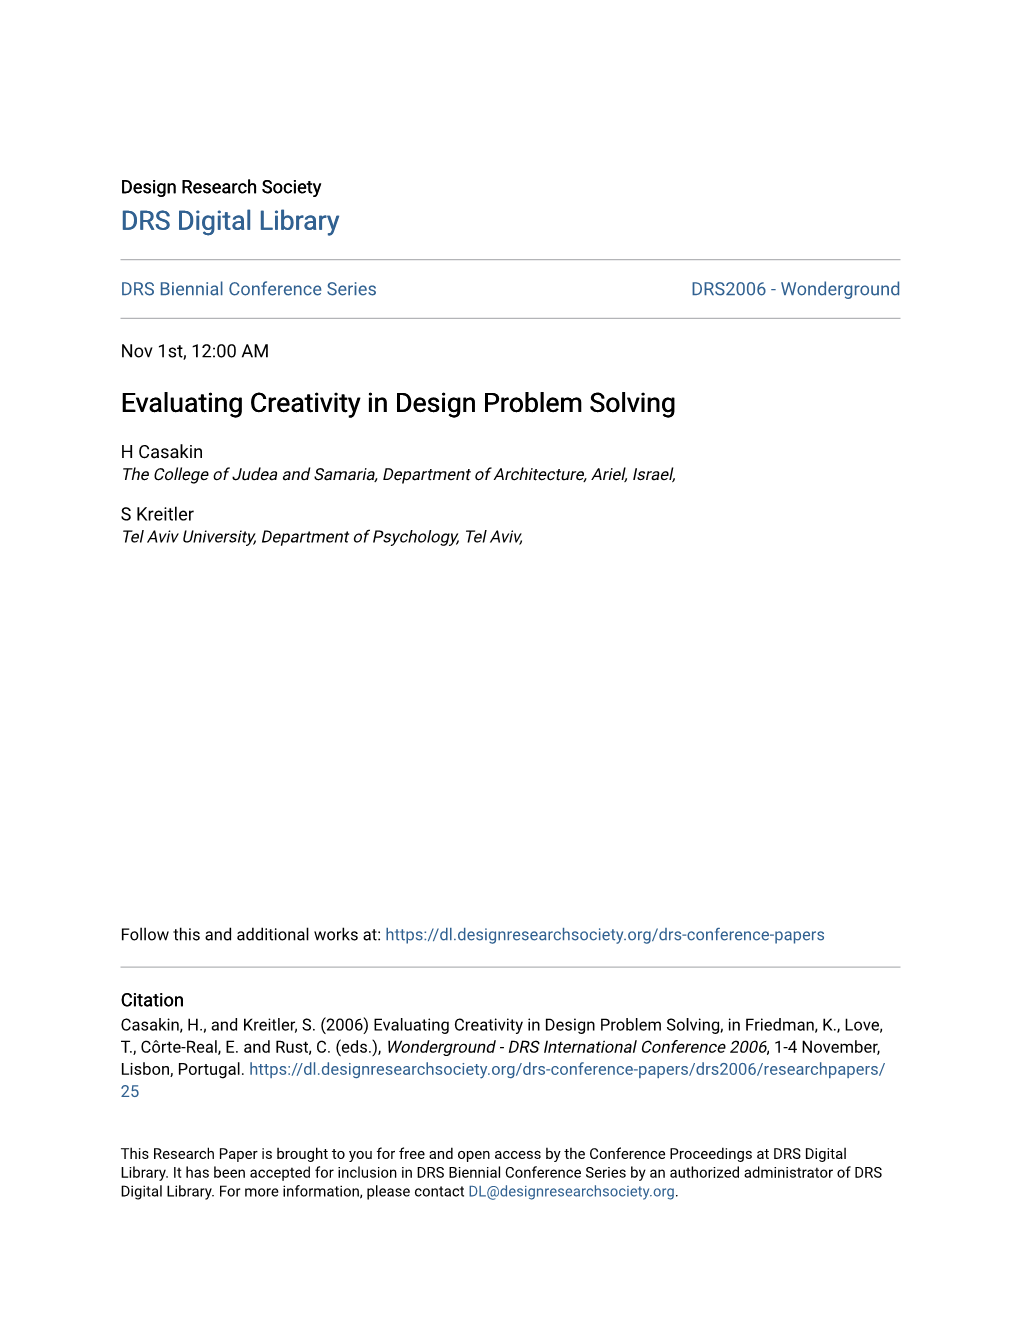 Evaluating Creativity in Design Problem Solving